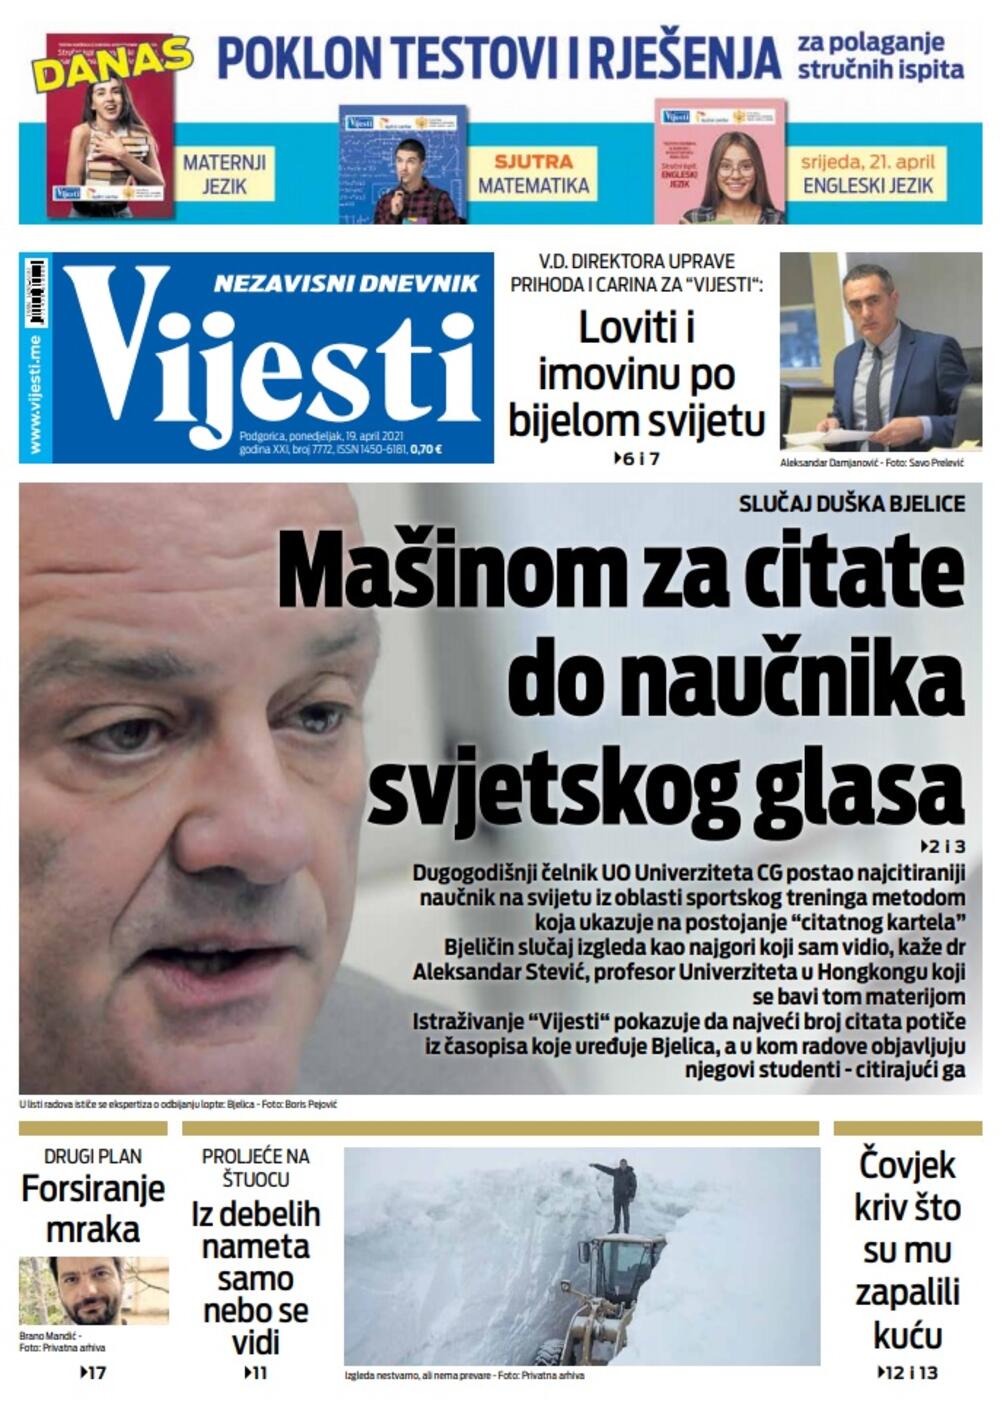 Naslovna strana "Vijesti" za ponedjeljak 19. april 2021. godine, Foto: Vijesti